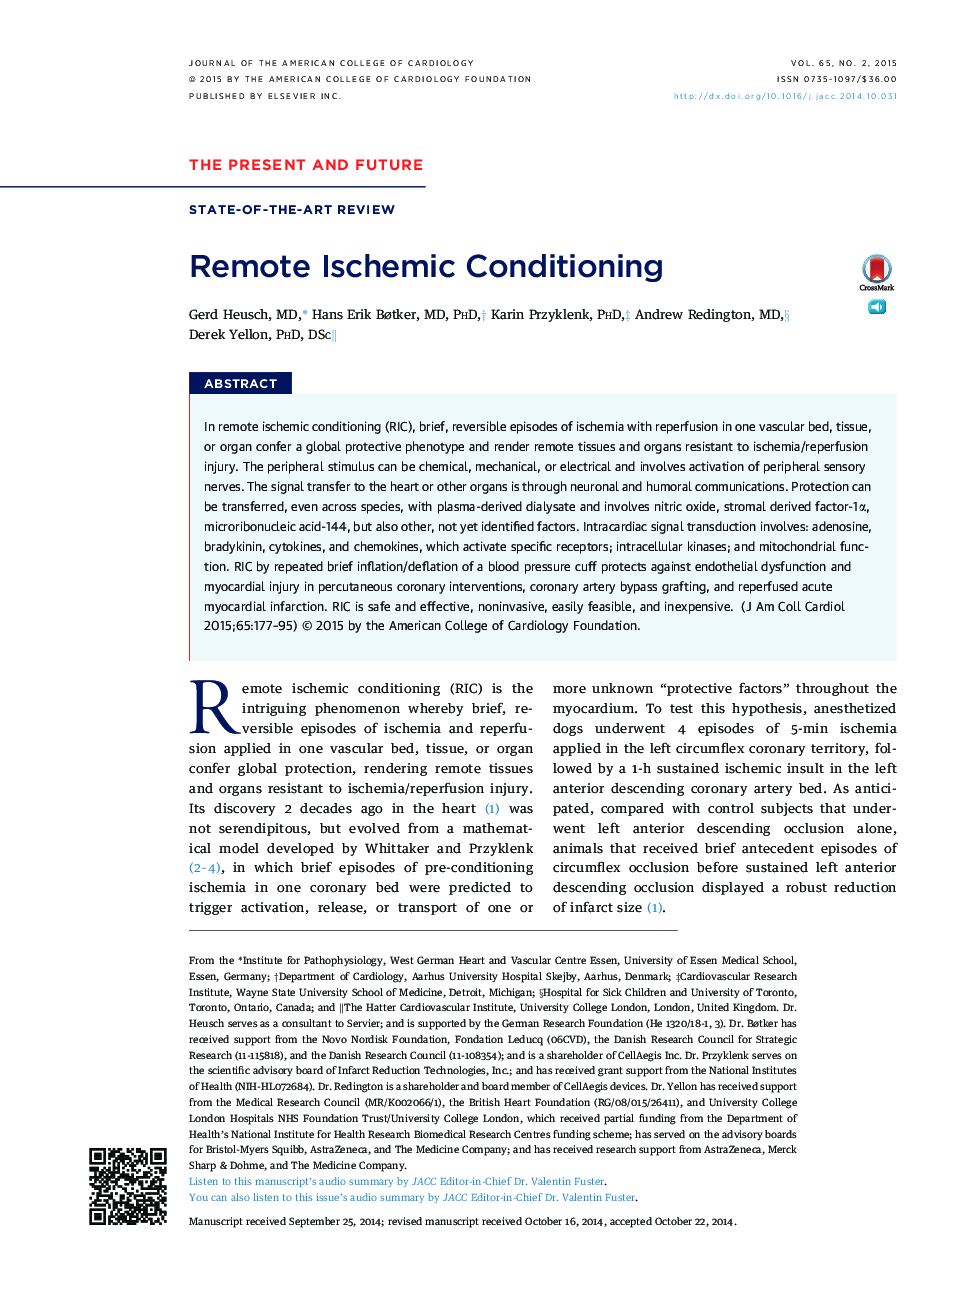 Remote Ischemic Conditioning 